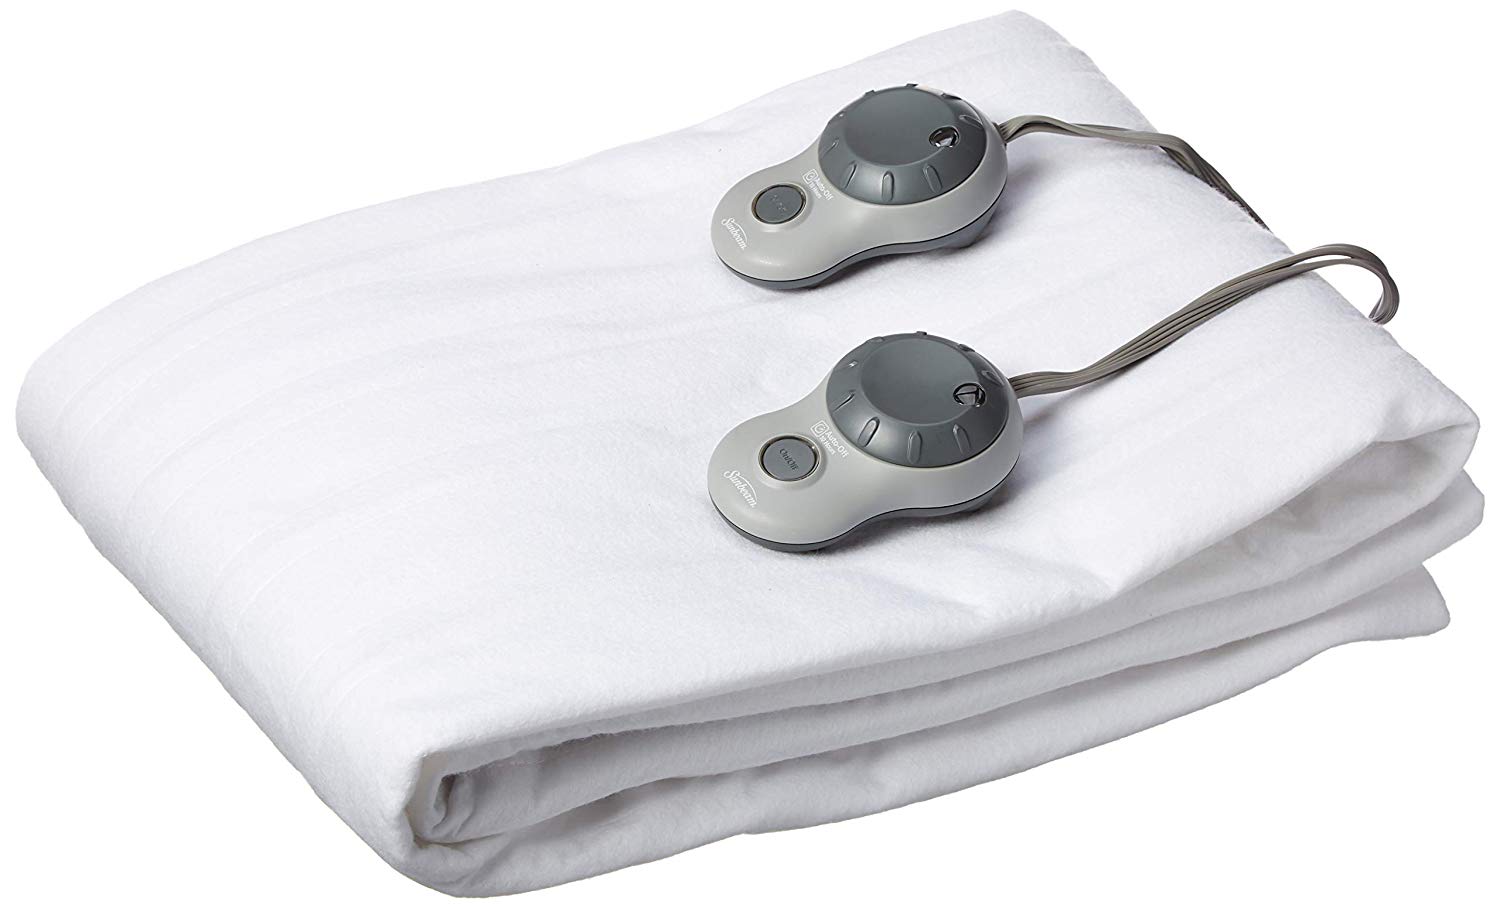 the best heating mattress pads